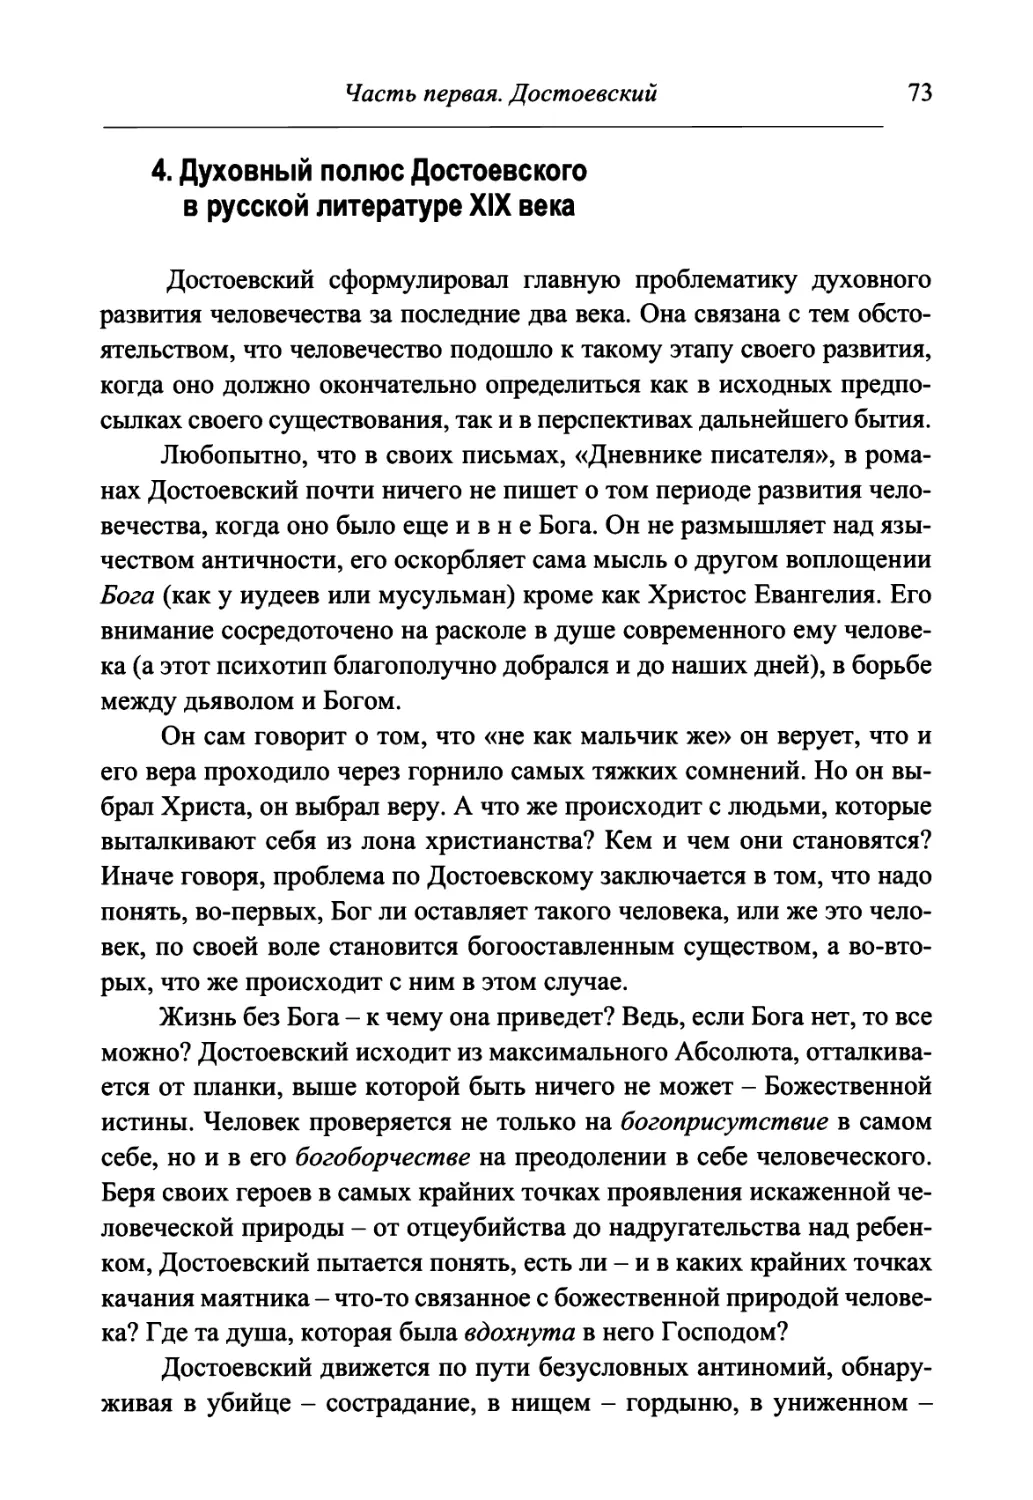 4. Духовный полюс Достоевского в русской литературе XIX века